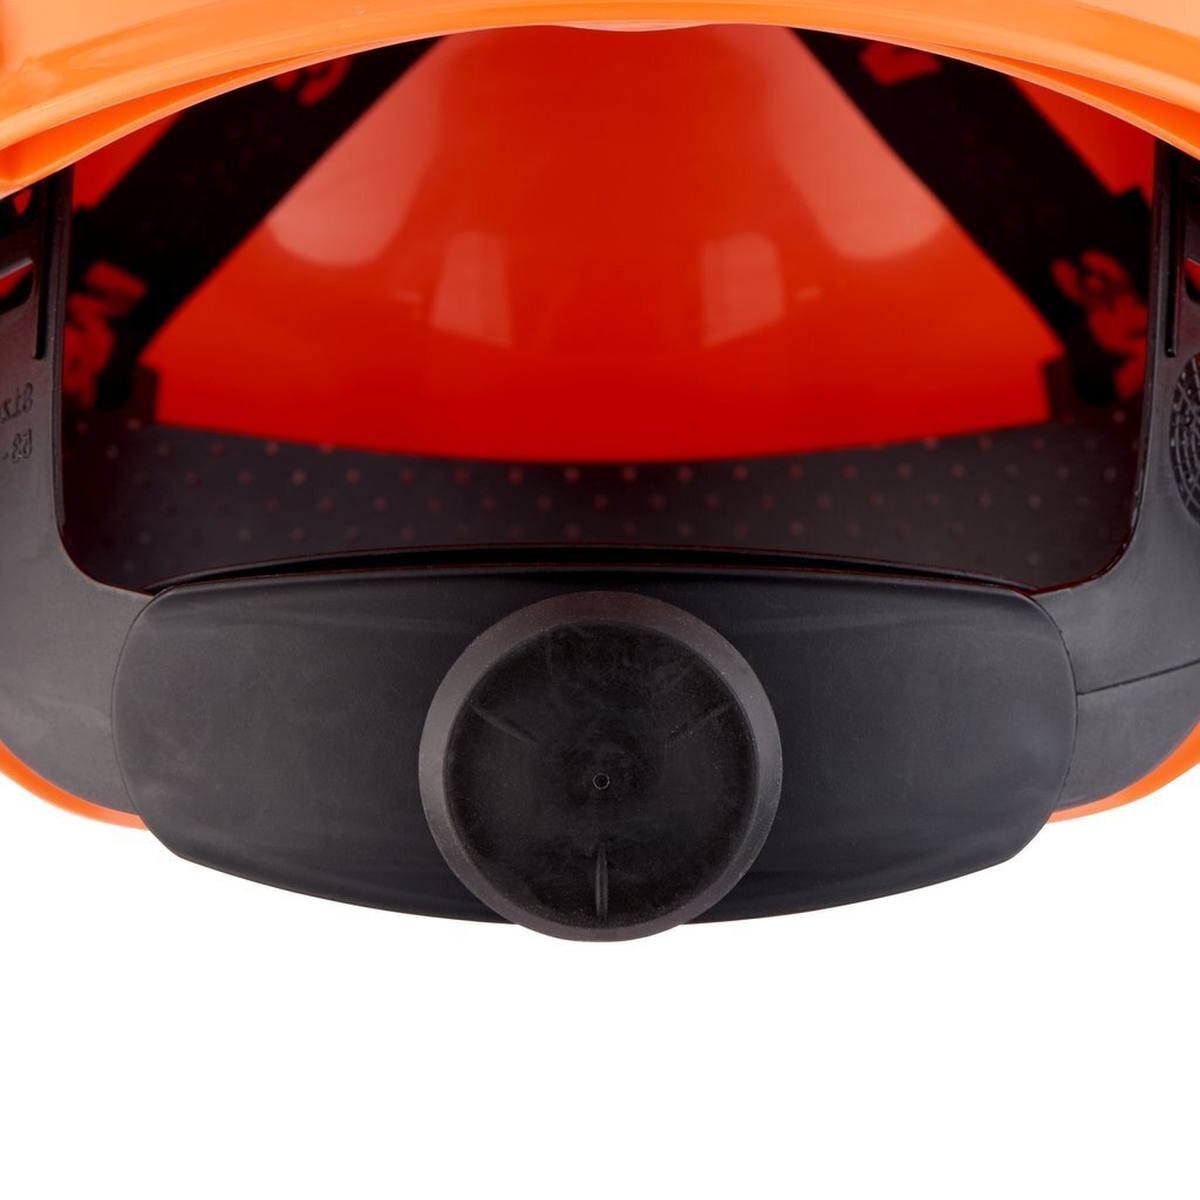 3M Casco de seguridad serie H700 H-700N-OR de color naranja, ventilado, con carraca y correa de soldadura de plástico